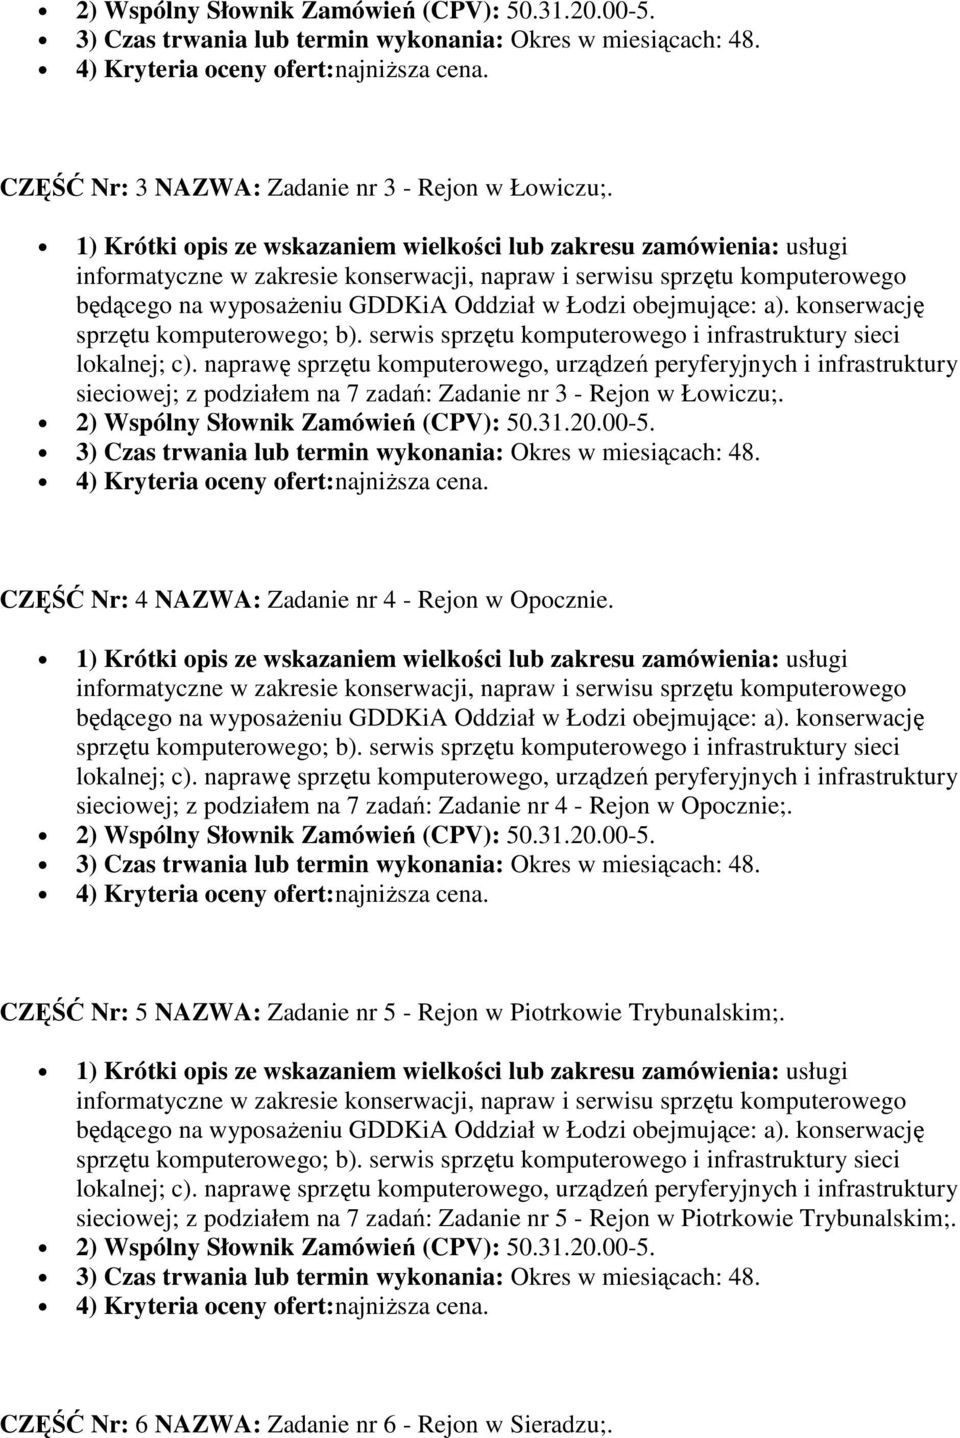 CZĘŚĆ Nr: 4 NAZWA: Zadanie nr 4 - Rejon w Opocznie.